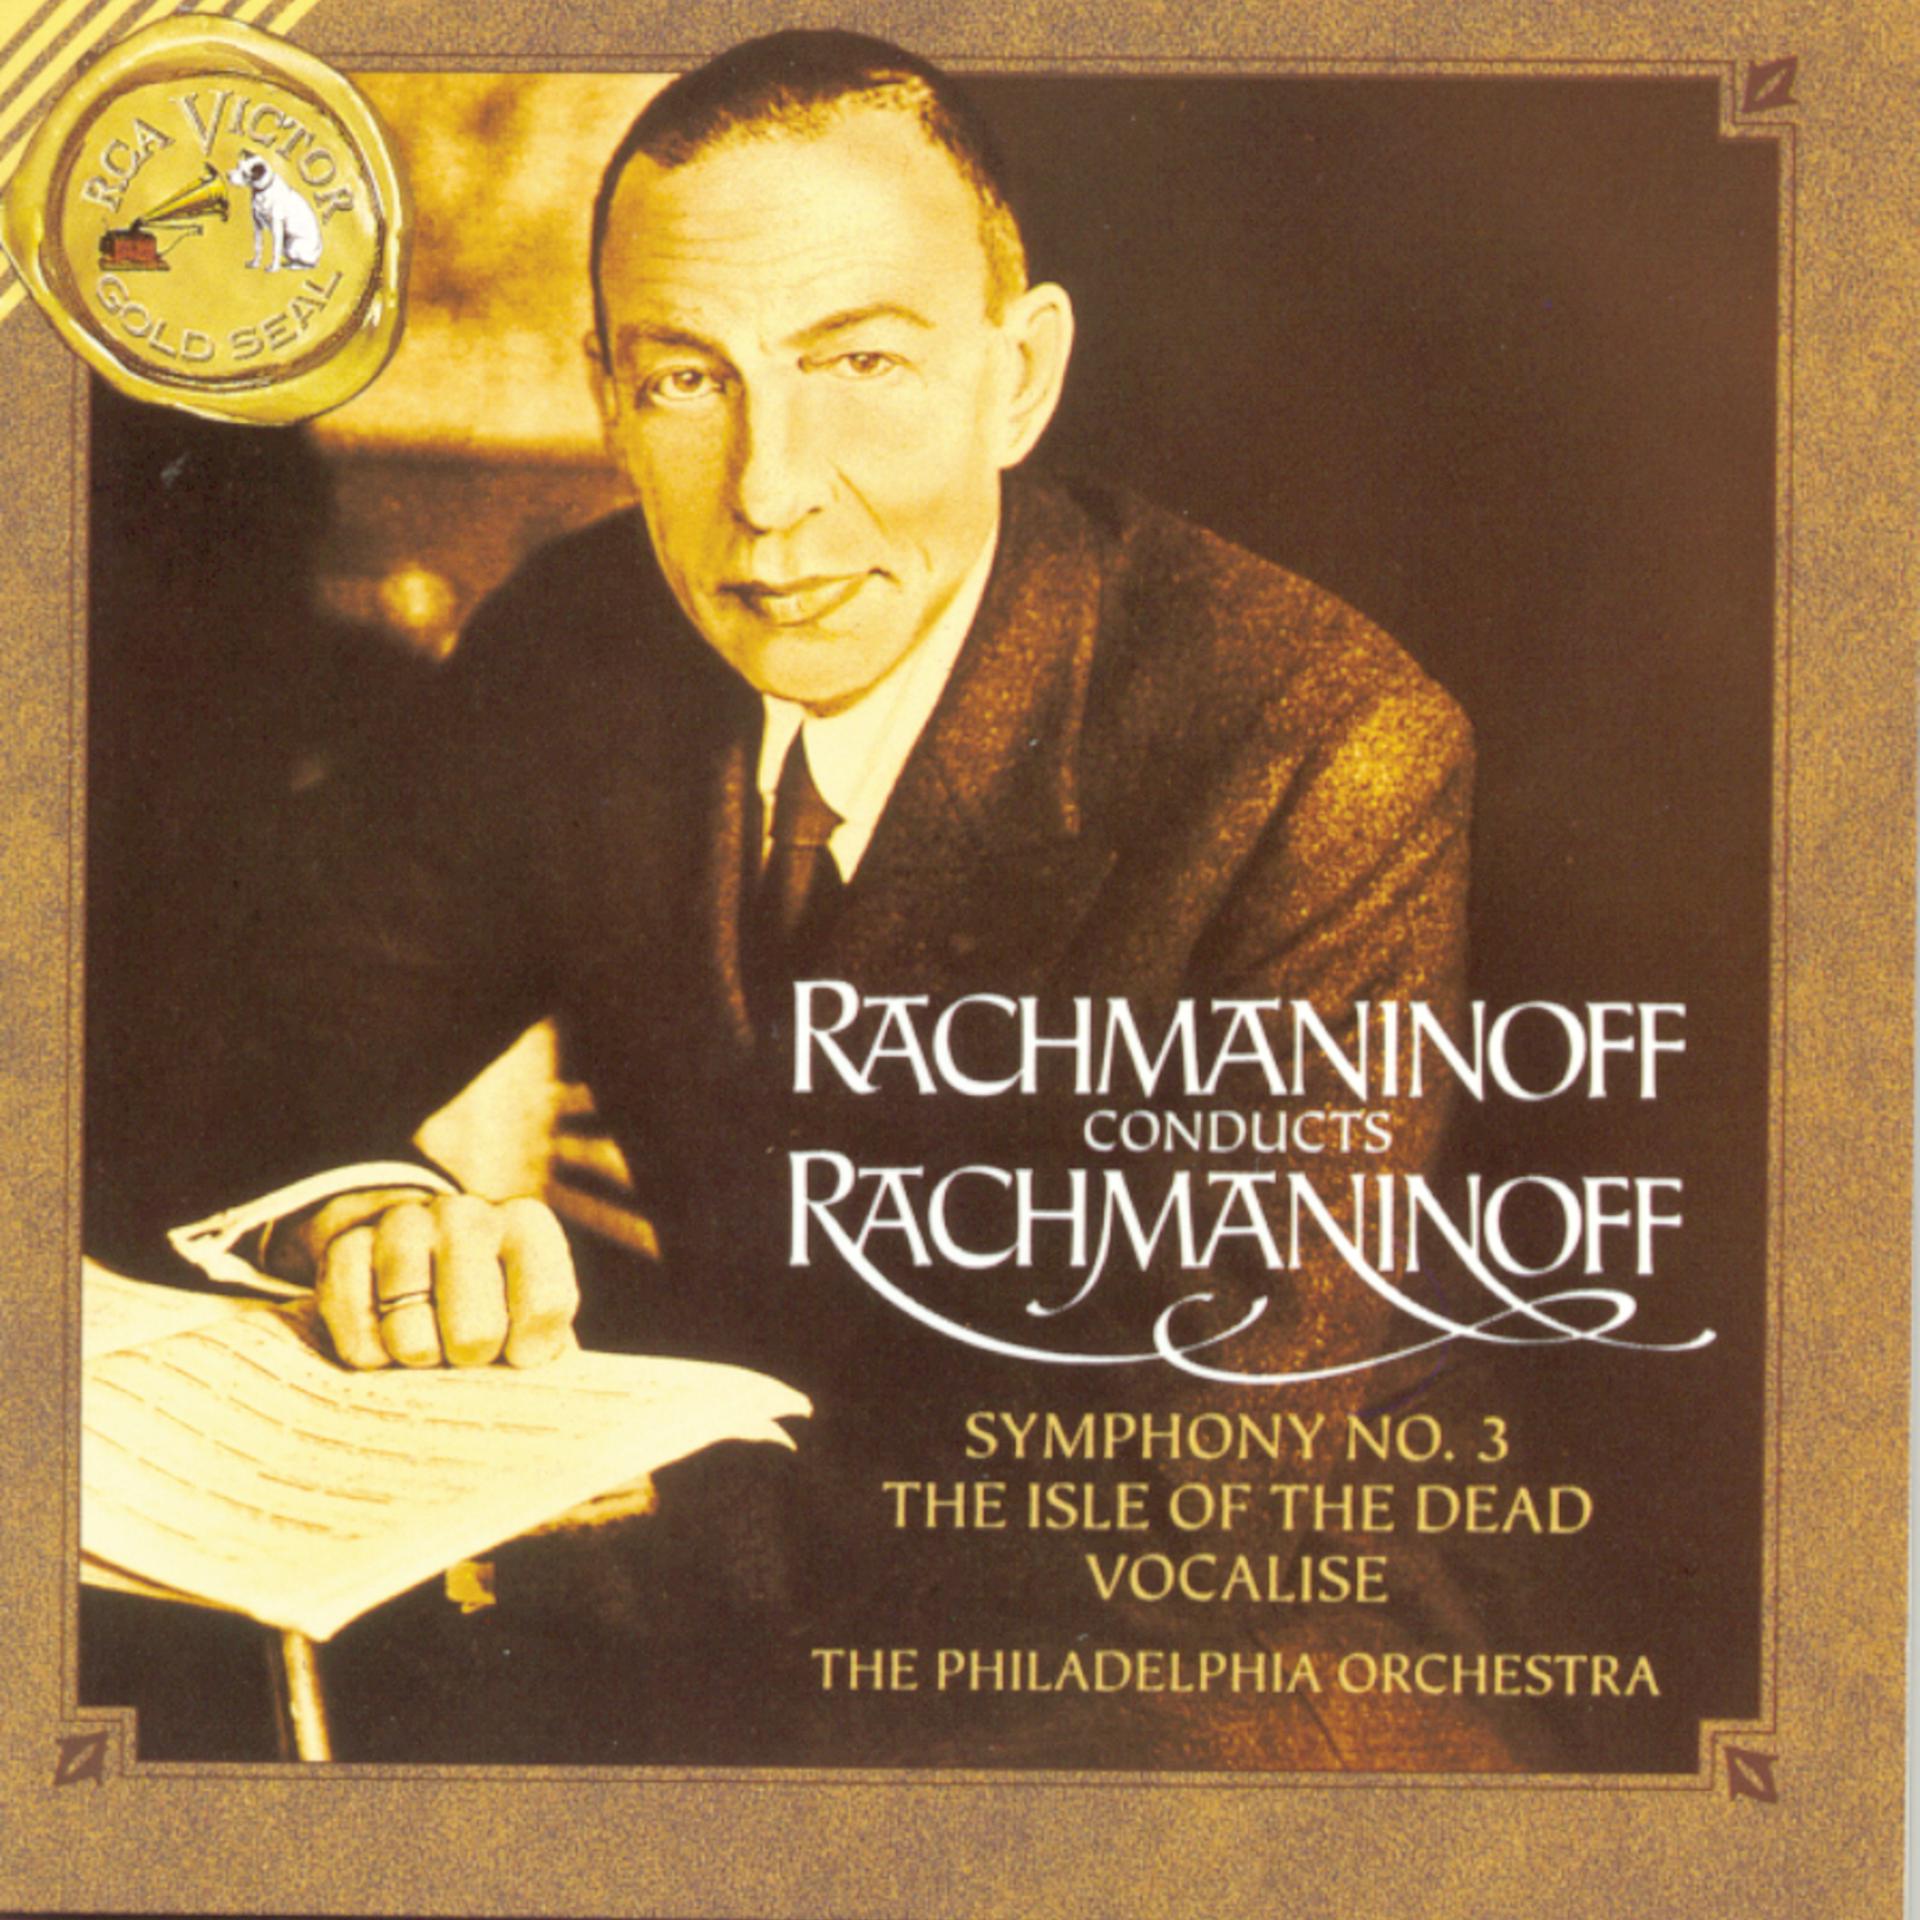 1 Симфония Рахманинова. Rachmaninoff композитор.